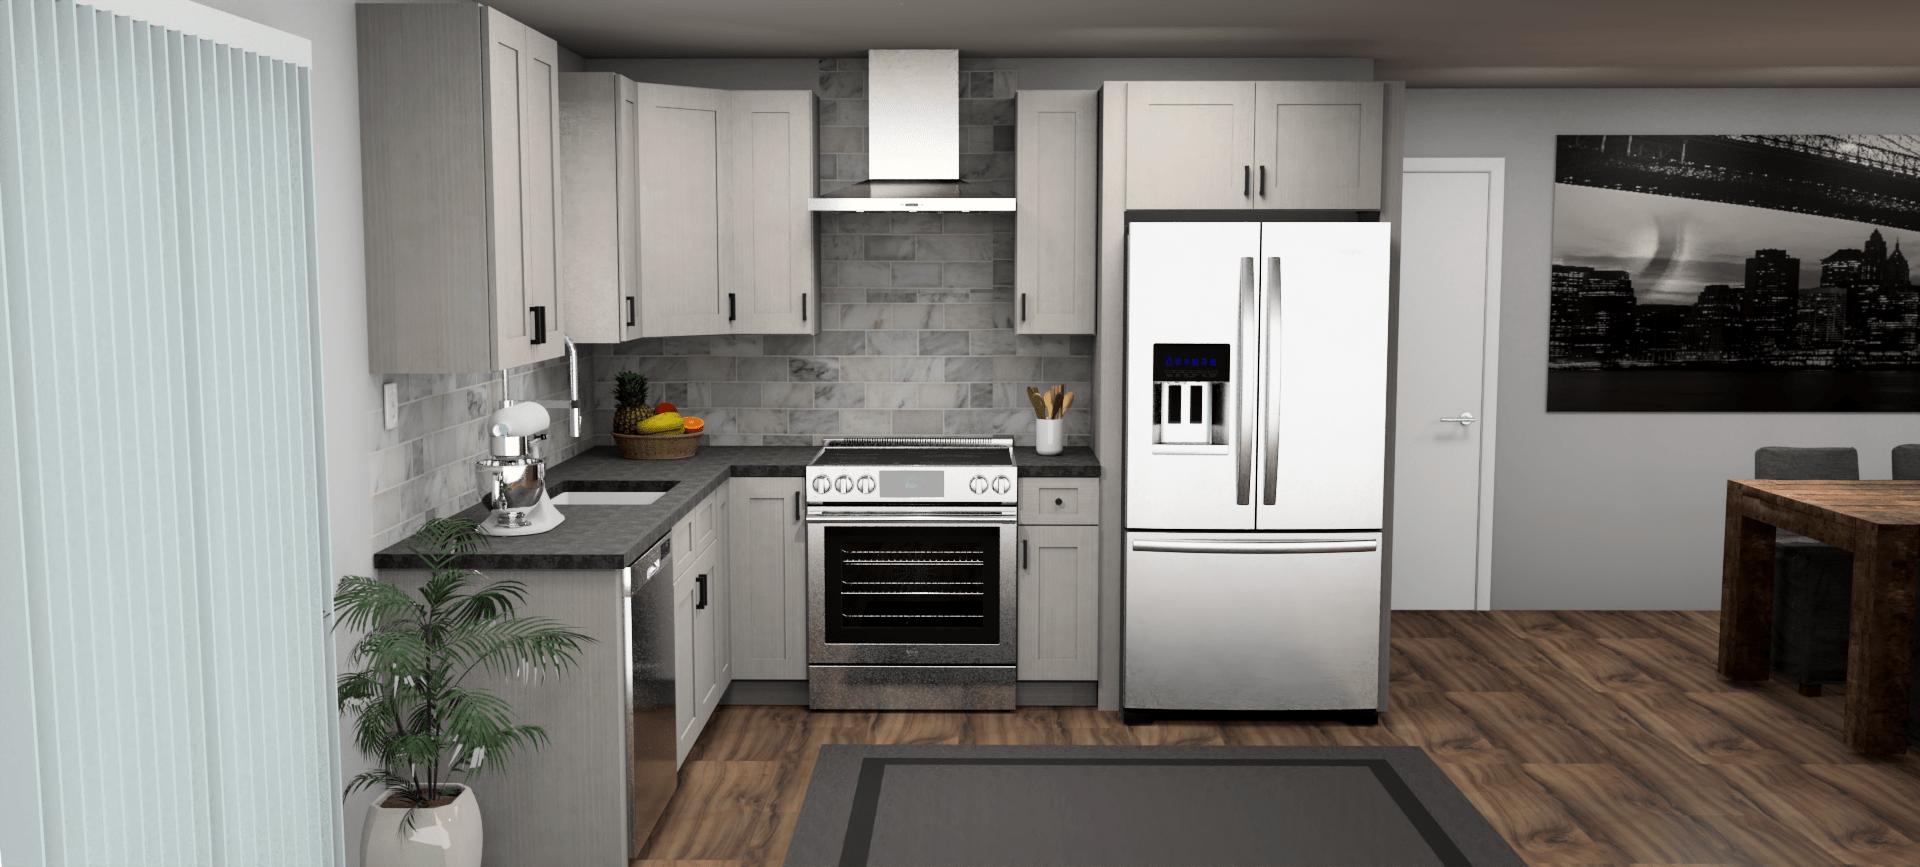 Fabuwood Allure Galaxy Horizon 8 x 10 L Shaped Kitchen Front Layout Photo